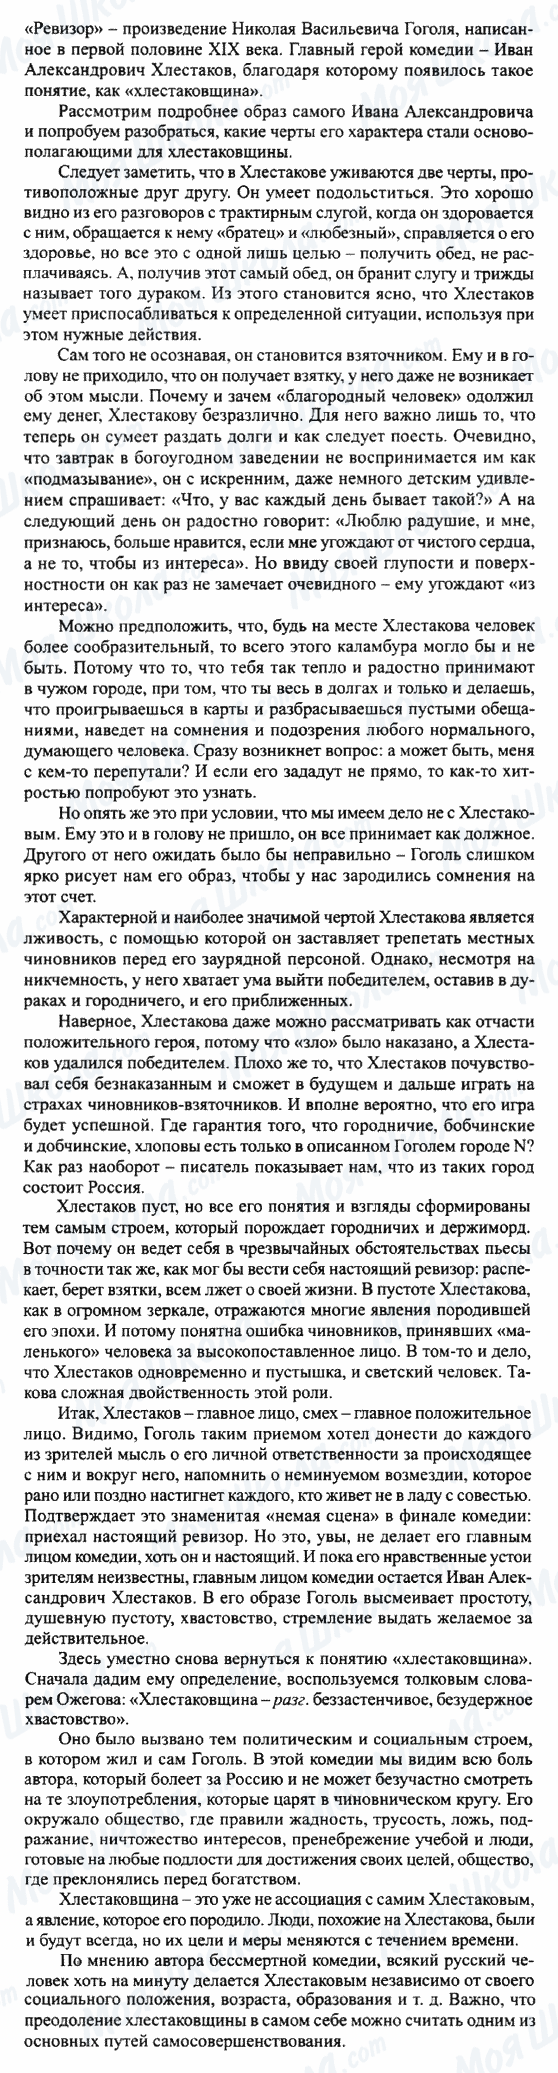 ГДЗ Російська література 8 клас сторінка Хлестаков и хлестаковщина (по пьесе 'Ревизор')